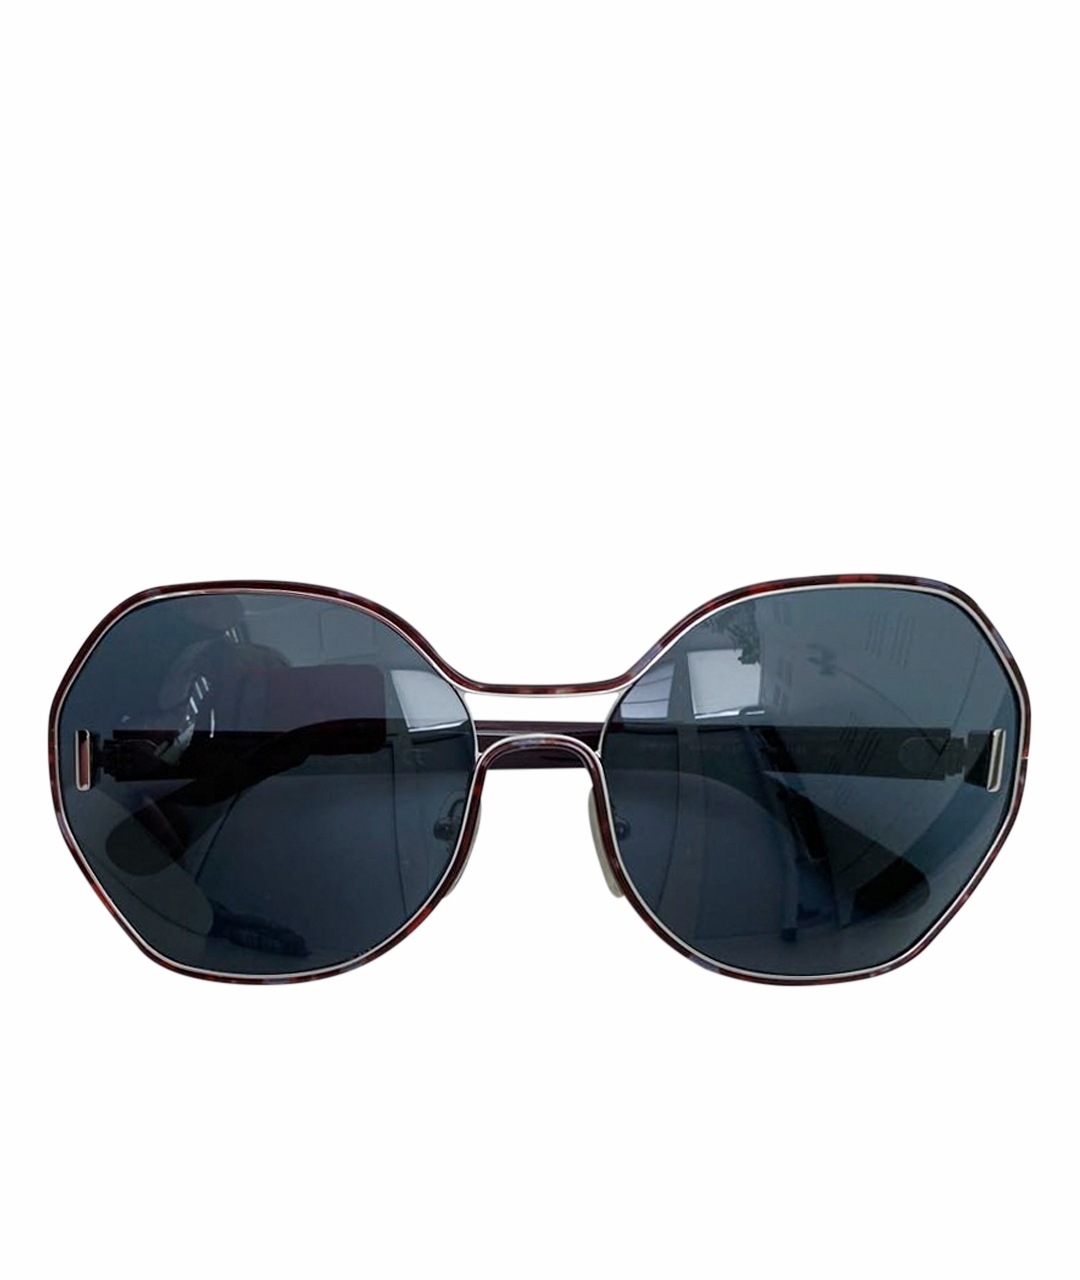 PRADA Бордовые металлические солнцезащитные очки, фото 1